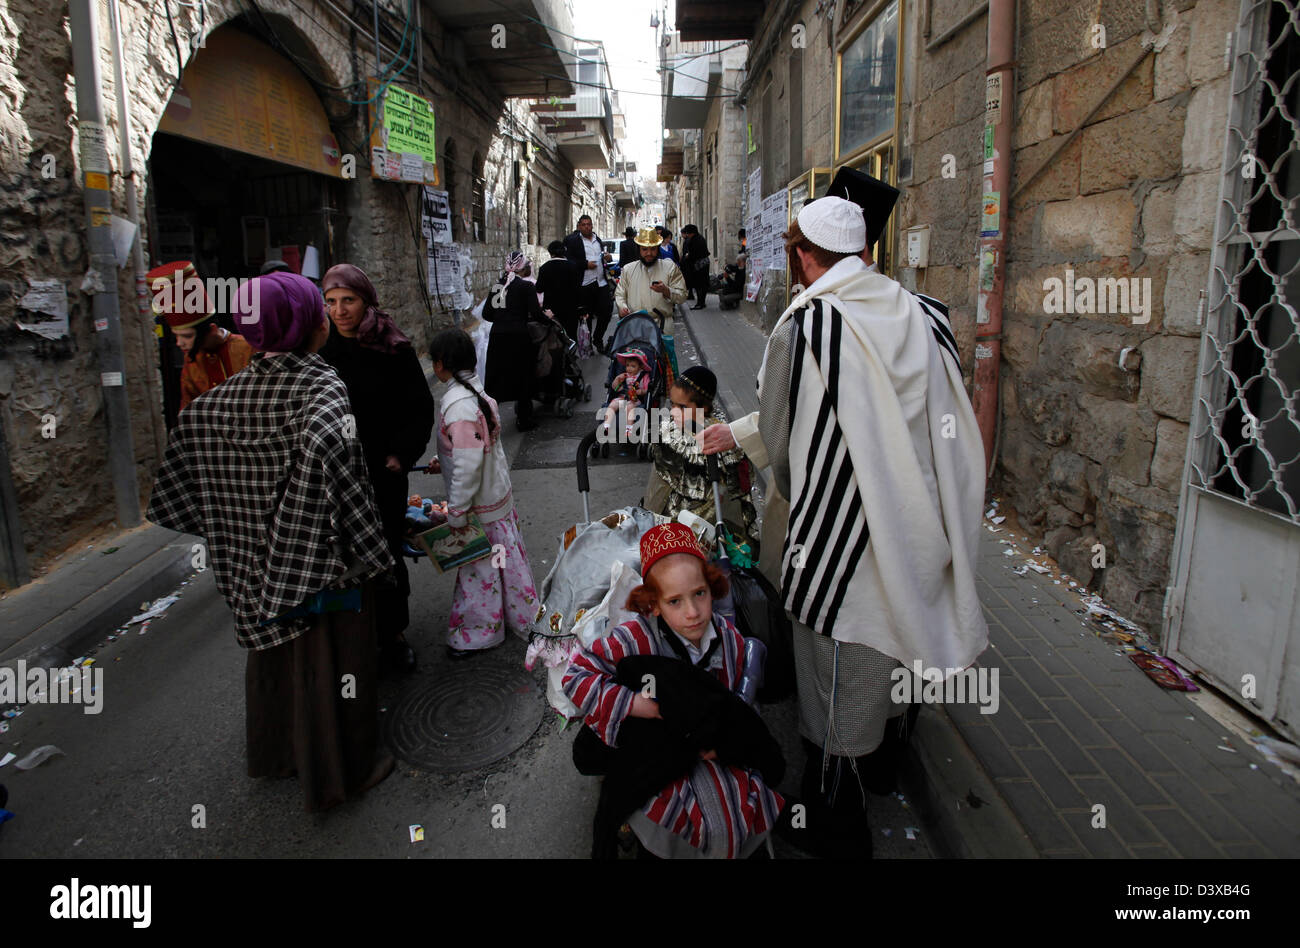 Gli ebrei Haredi indossano il costume durante la vacanza ebraica di Purim nel quartiere di Mea Shearim, un'enclave ultra-ortodossa in Israele a Gerusalemme ovest Foto Stock